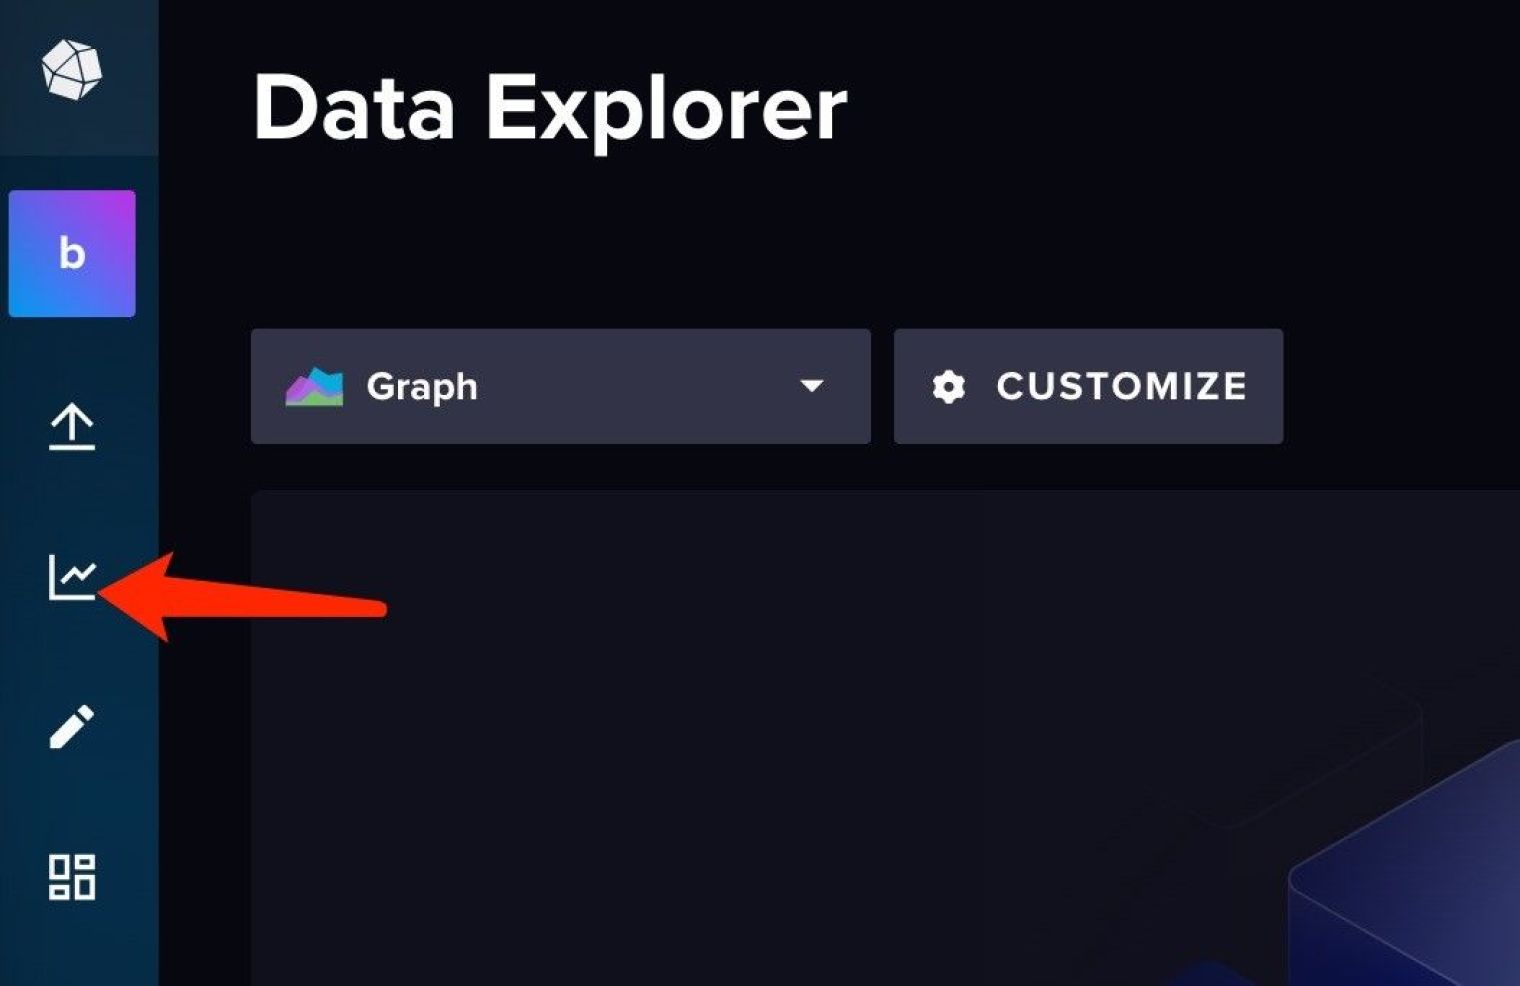 Go to Data Explorer